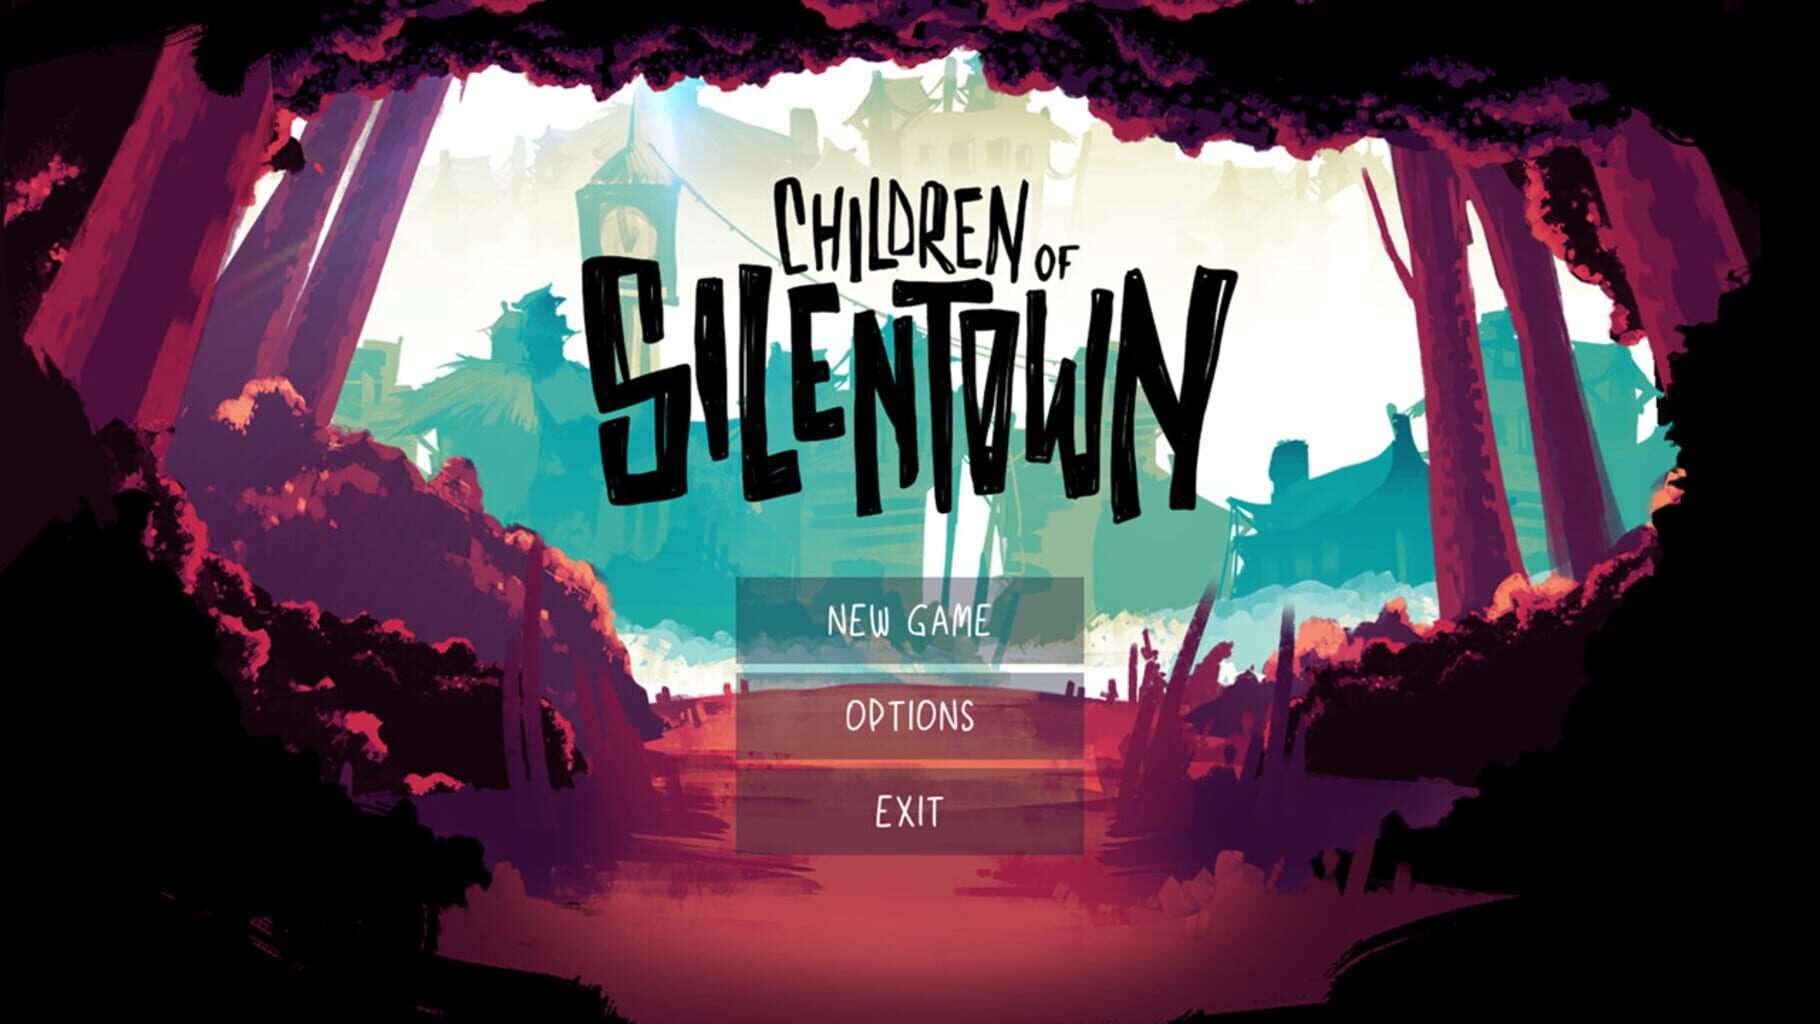 Children of Silentown screenshot